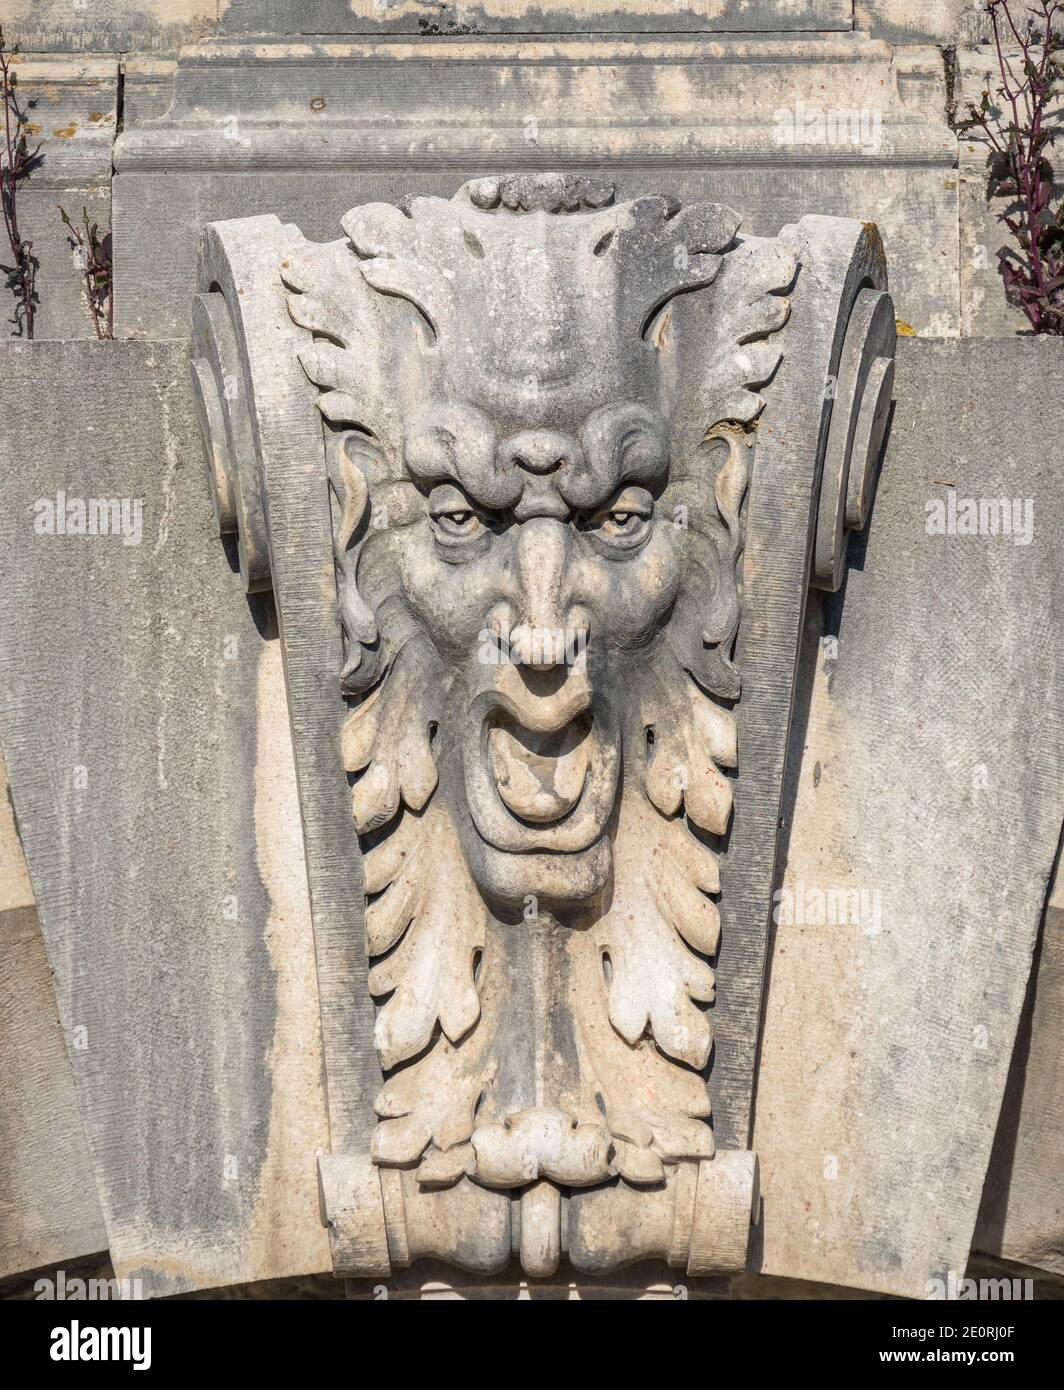 Gargoyle's head architecture ornament at Peles Castle in Sinaia, Romania. Stock Photo